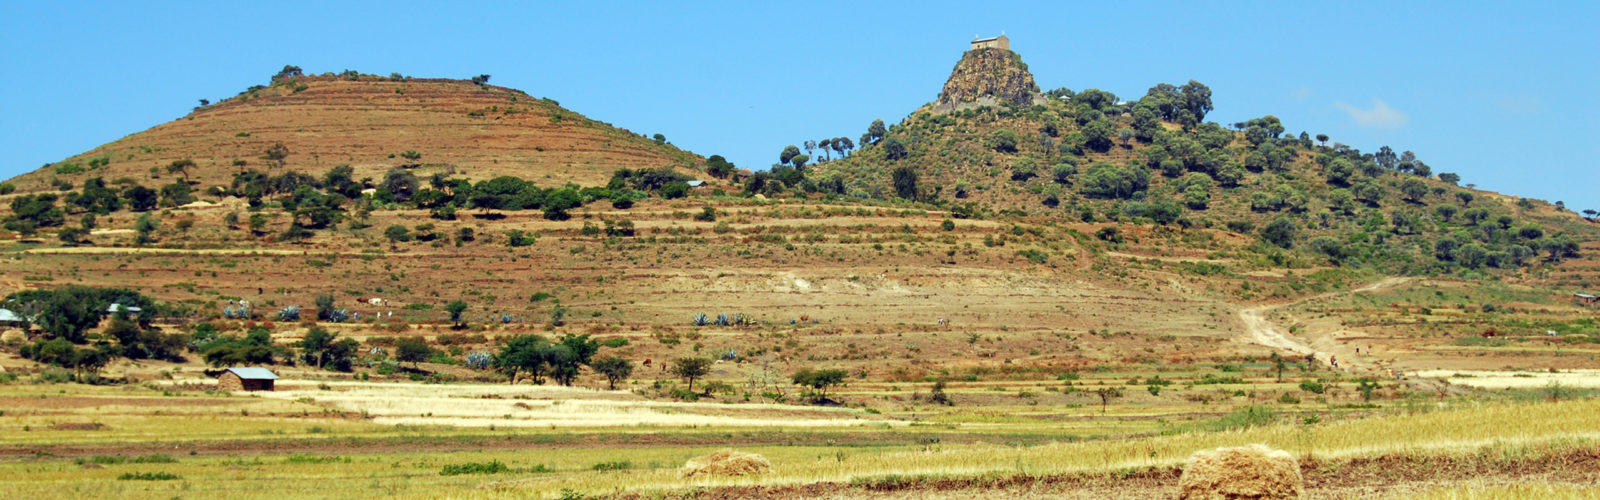 tigray-landscape-ethiopia